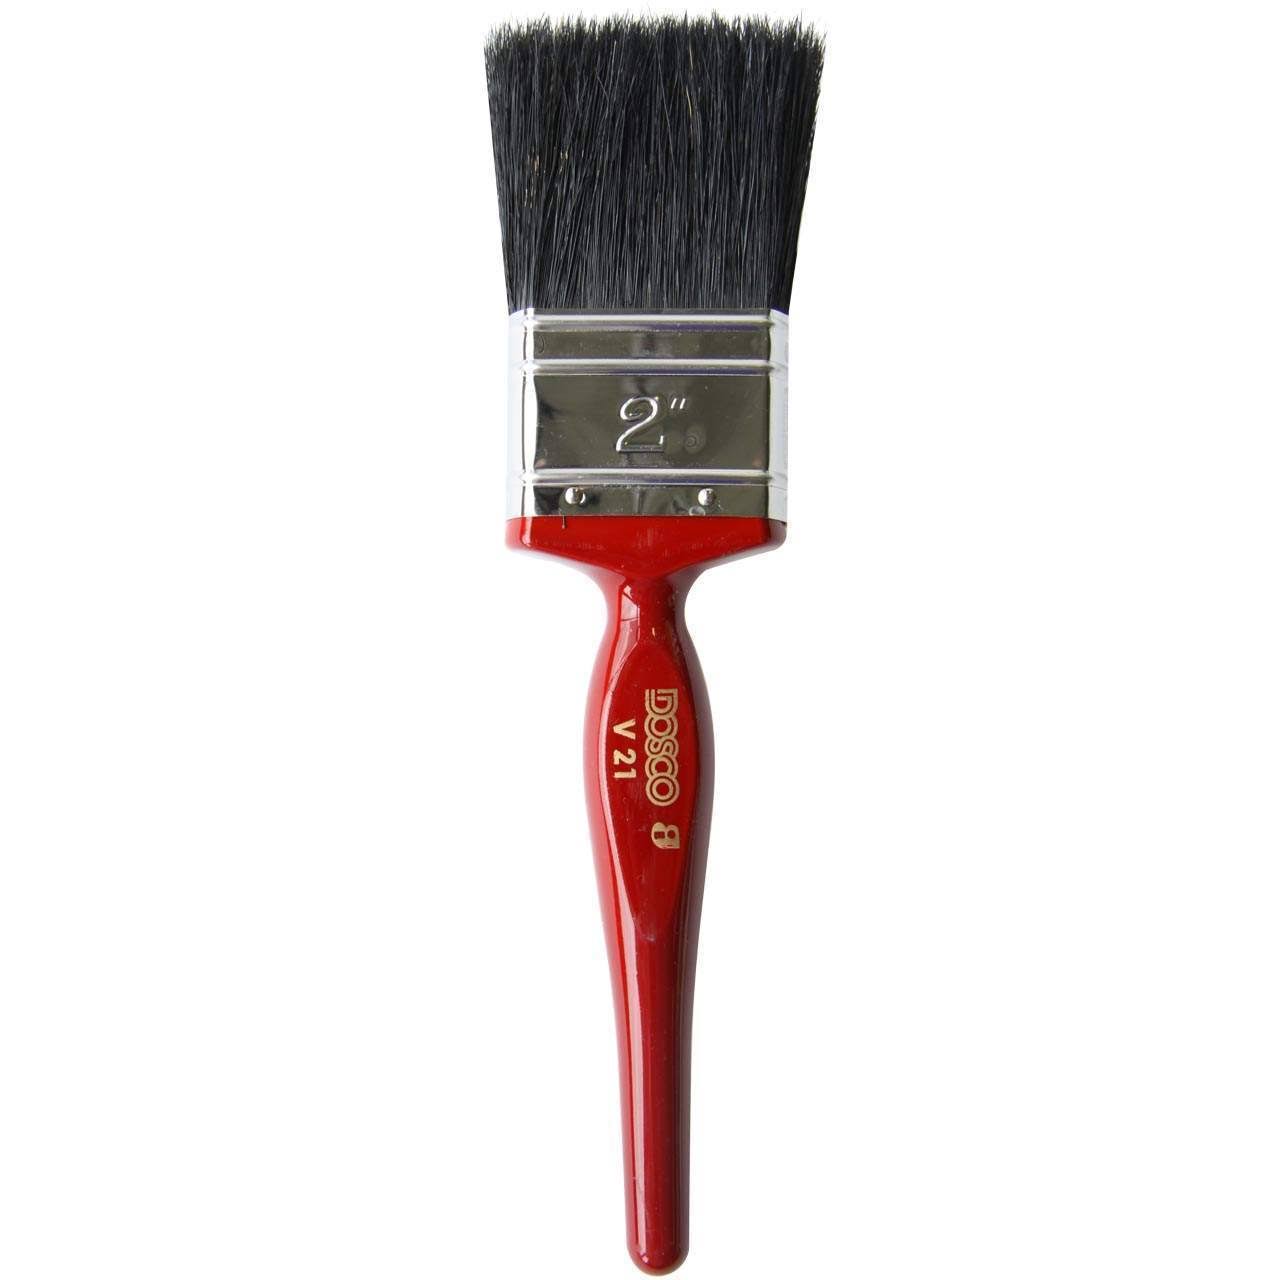 Dosco V21 Paint Brush - 3"